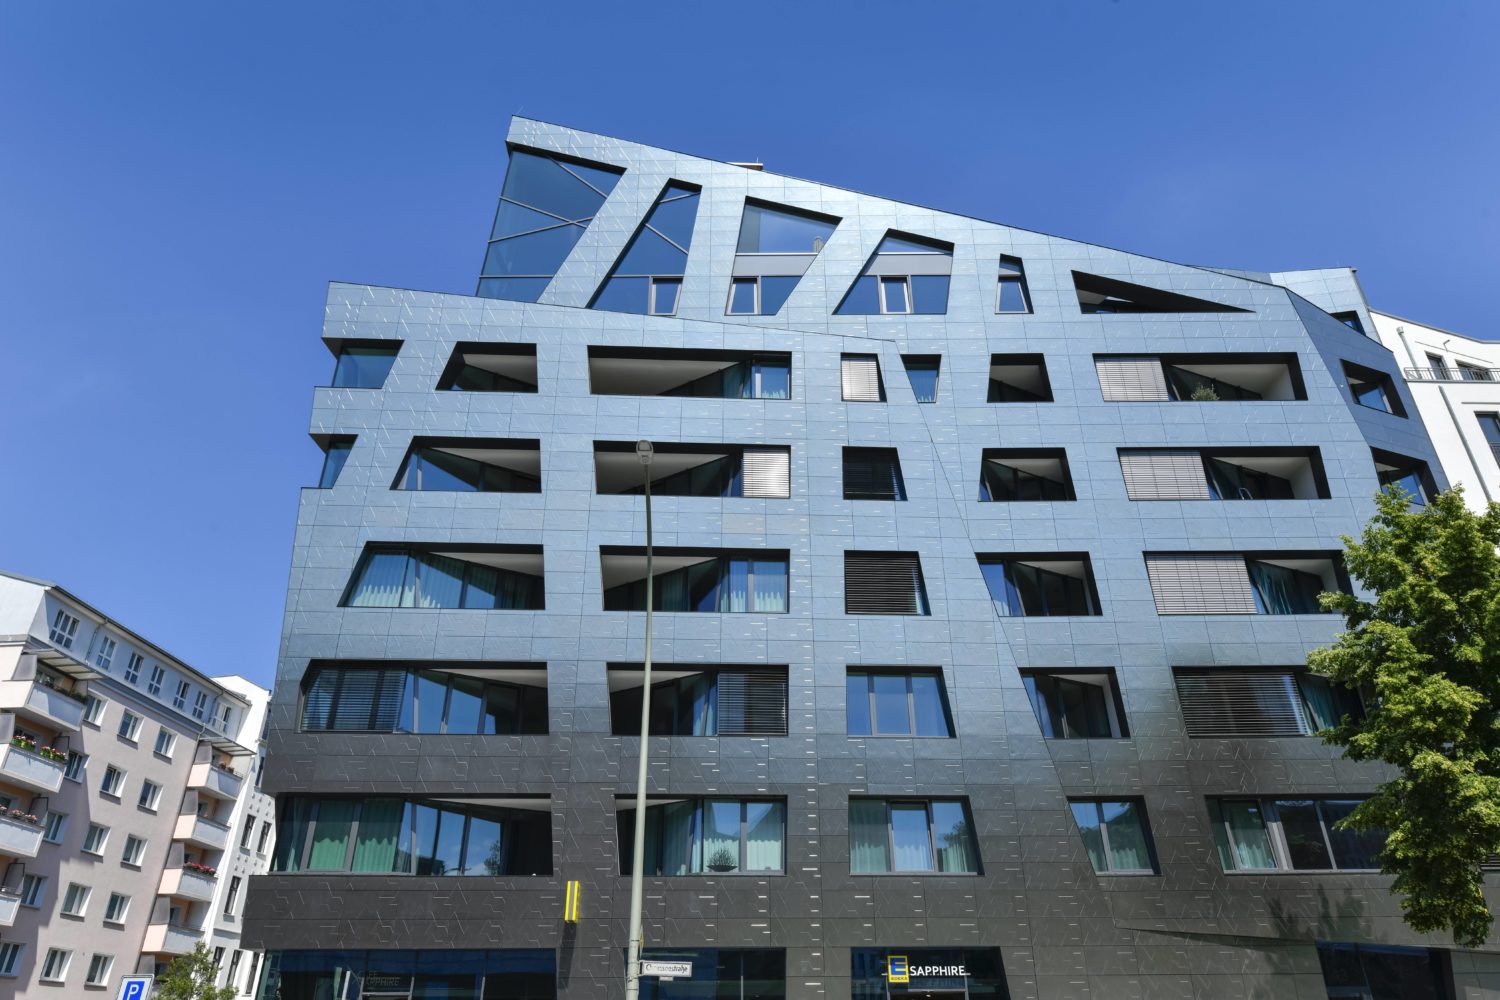 Architektur Projekte Berlin: Wohnhaus Sapphire von Daniel Libeskind. Foto: Imago/Schöning